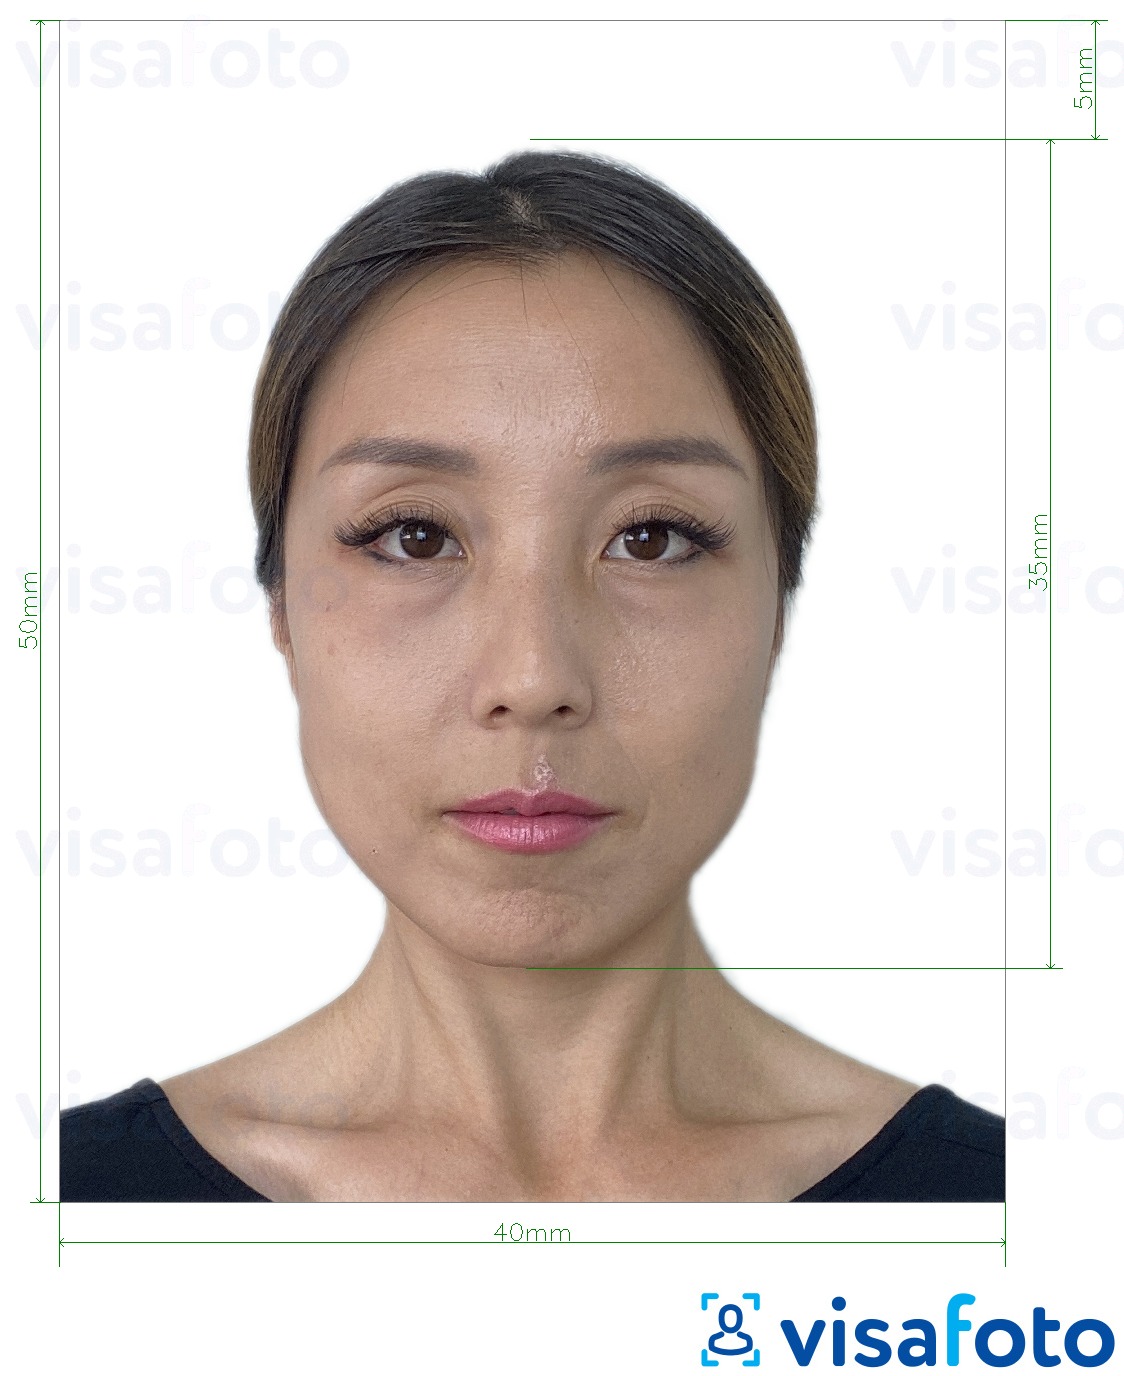 Príklad fotografie pre Hong Kong Visa 40x50 mm (4x5 cm) s presnou špecifikáciou veľkosti